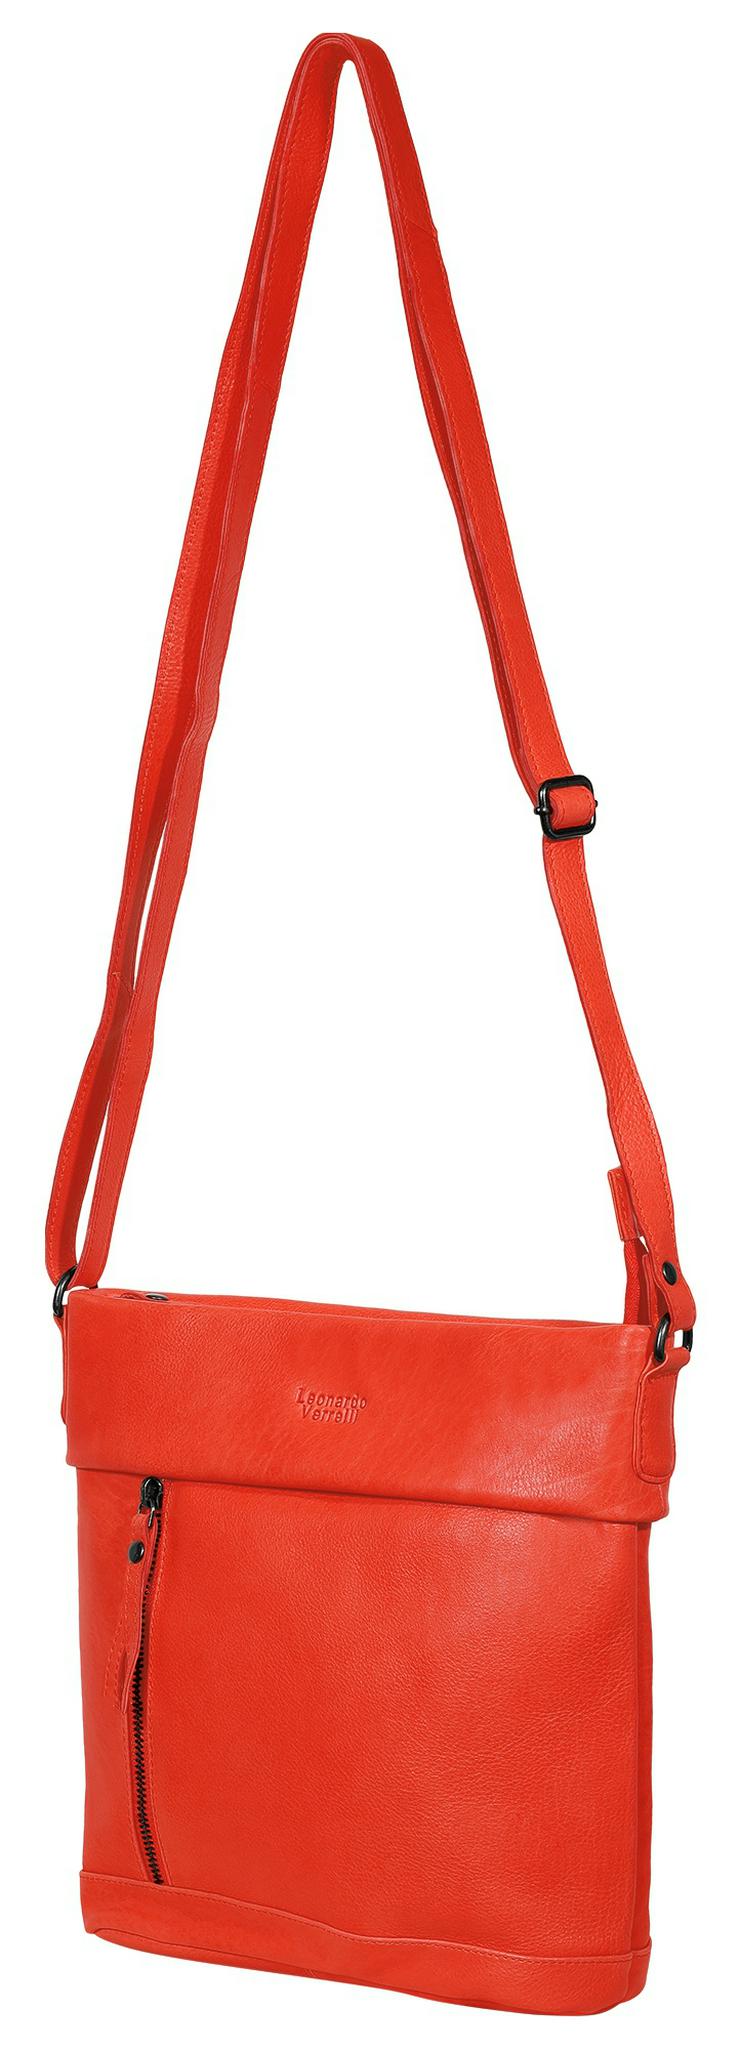 Bild 2: Leonardo Verrelli Tasche aus Echtleder, Rot